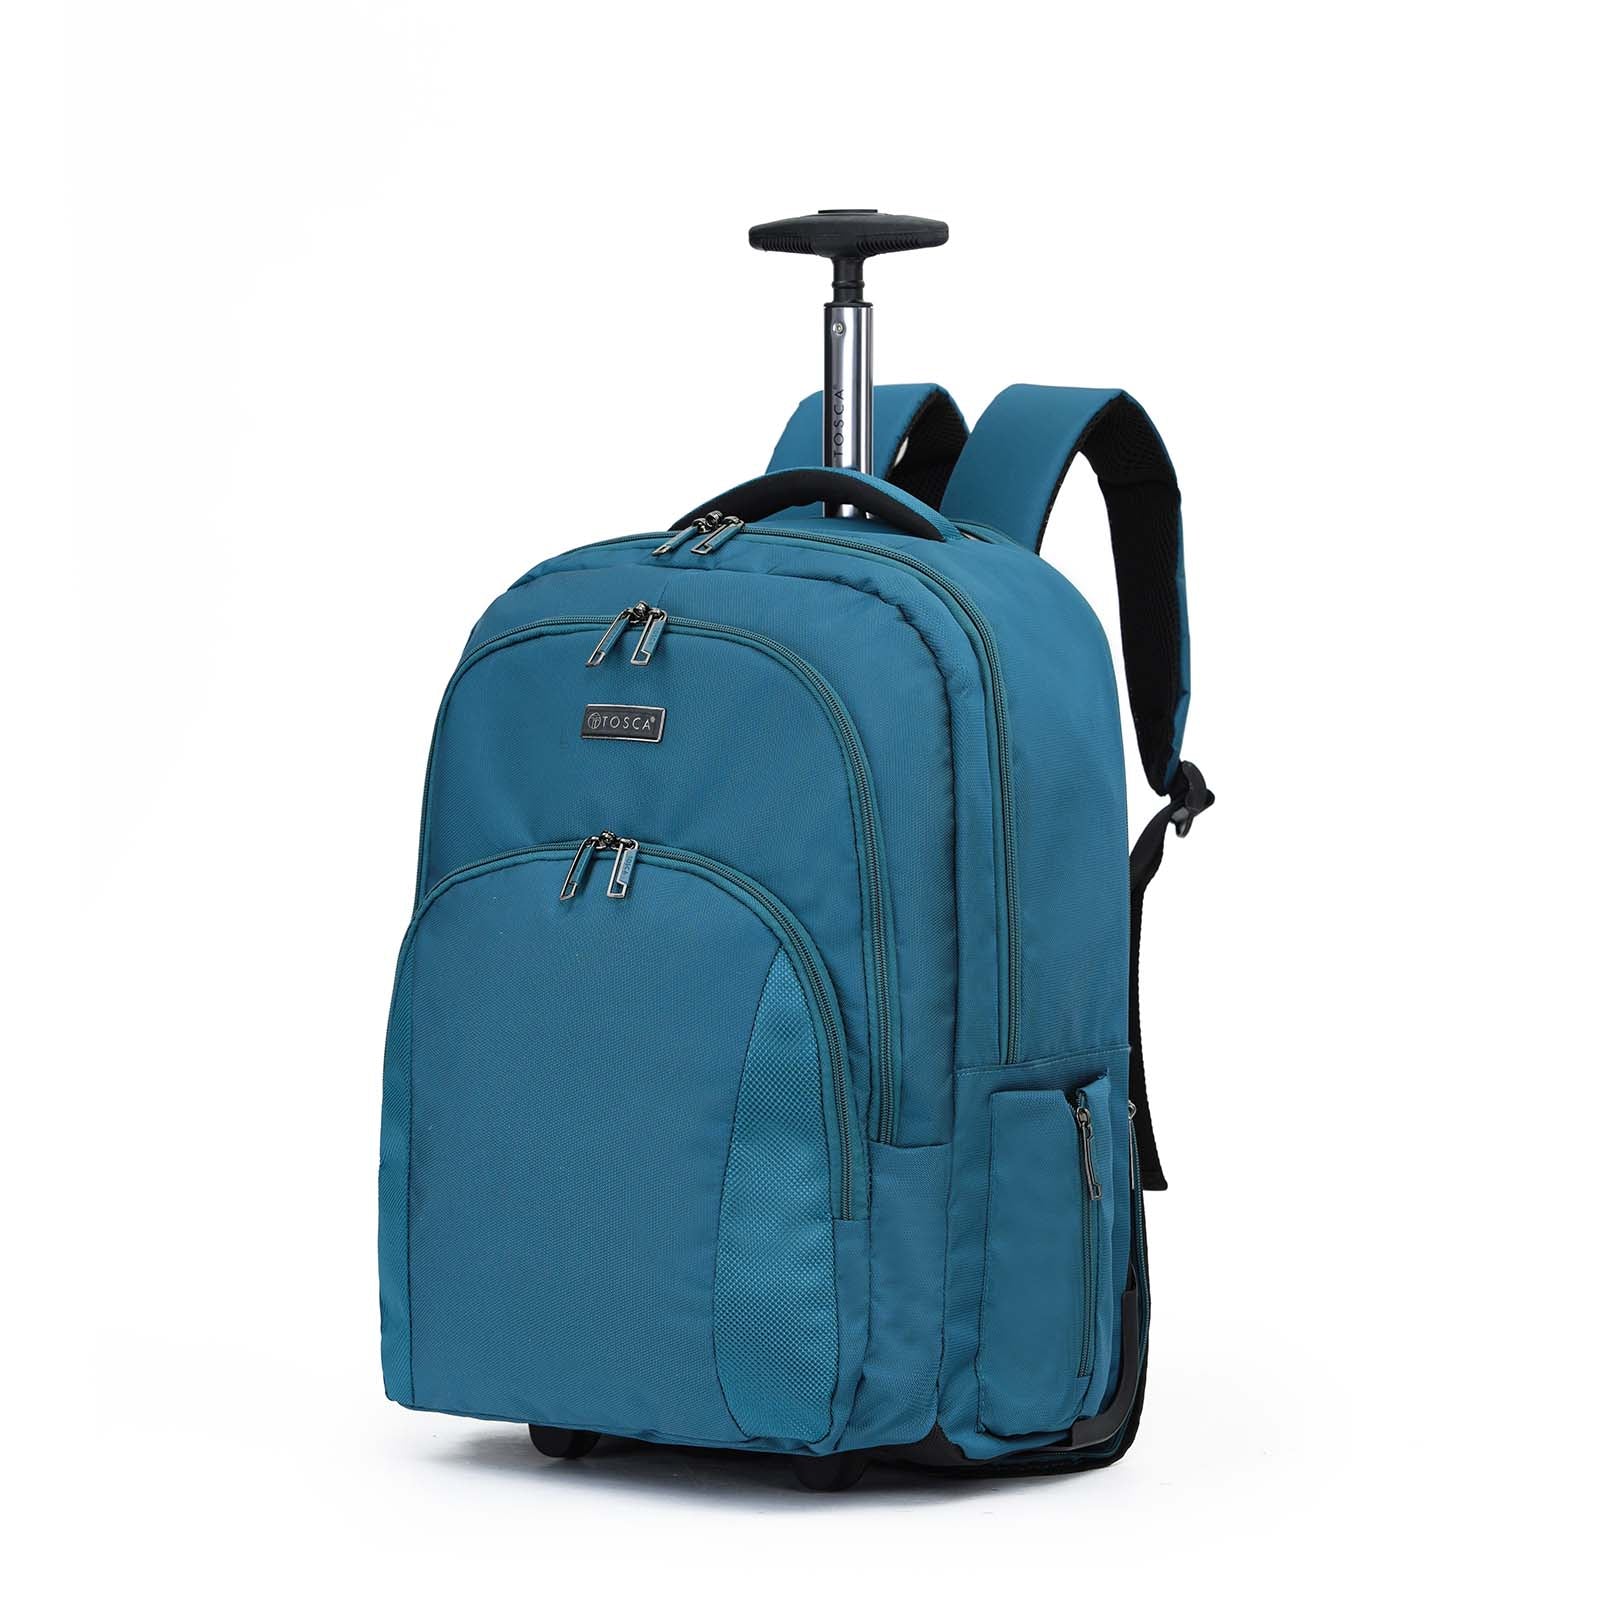 Tosca_Oakmont_Carry-On_Wheeled_Laptop_Backpack_Teal_Front.jpg